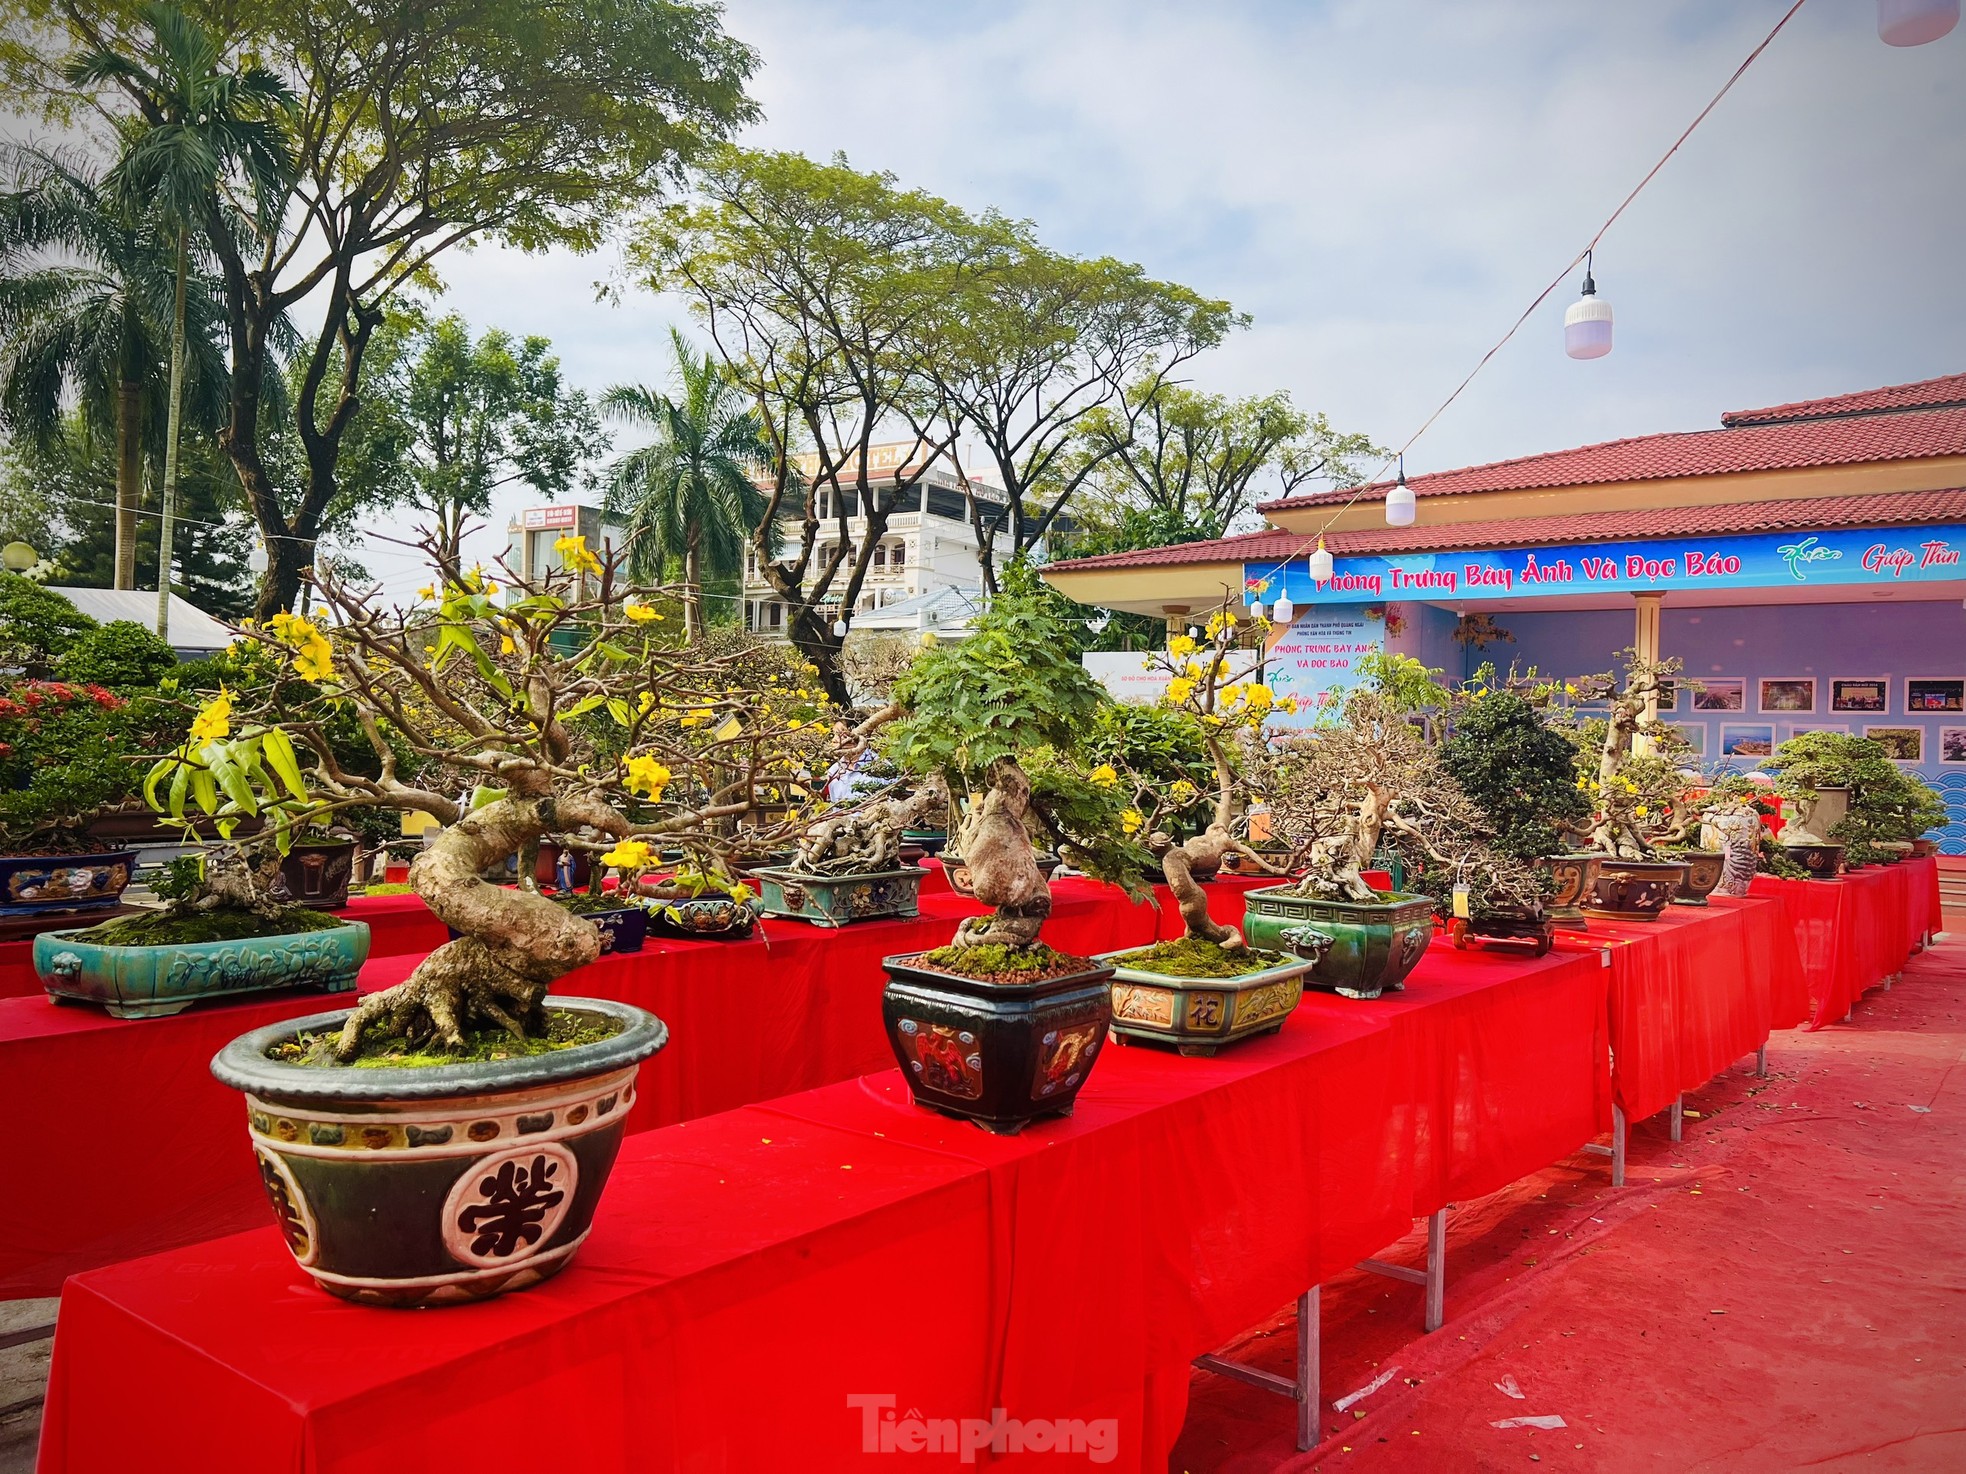 Dàn bonsai độc lạ, giá lên đến 500 triệu đồng ở Quảng Ngãi - Ảnh 3.